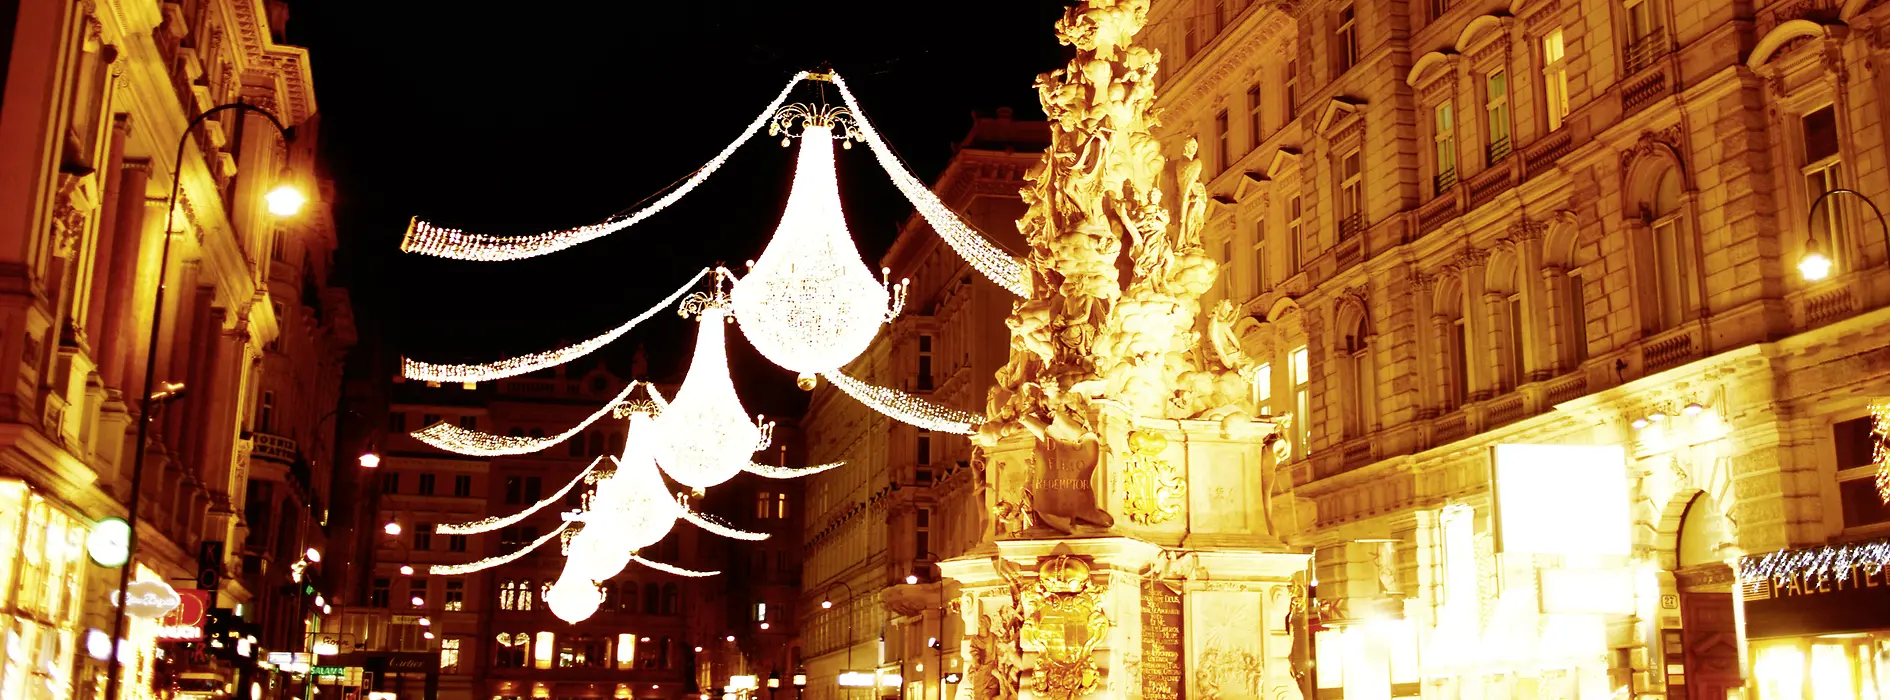 Décorations lumineuses de Noël sur le Wiener Graben 